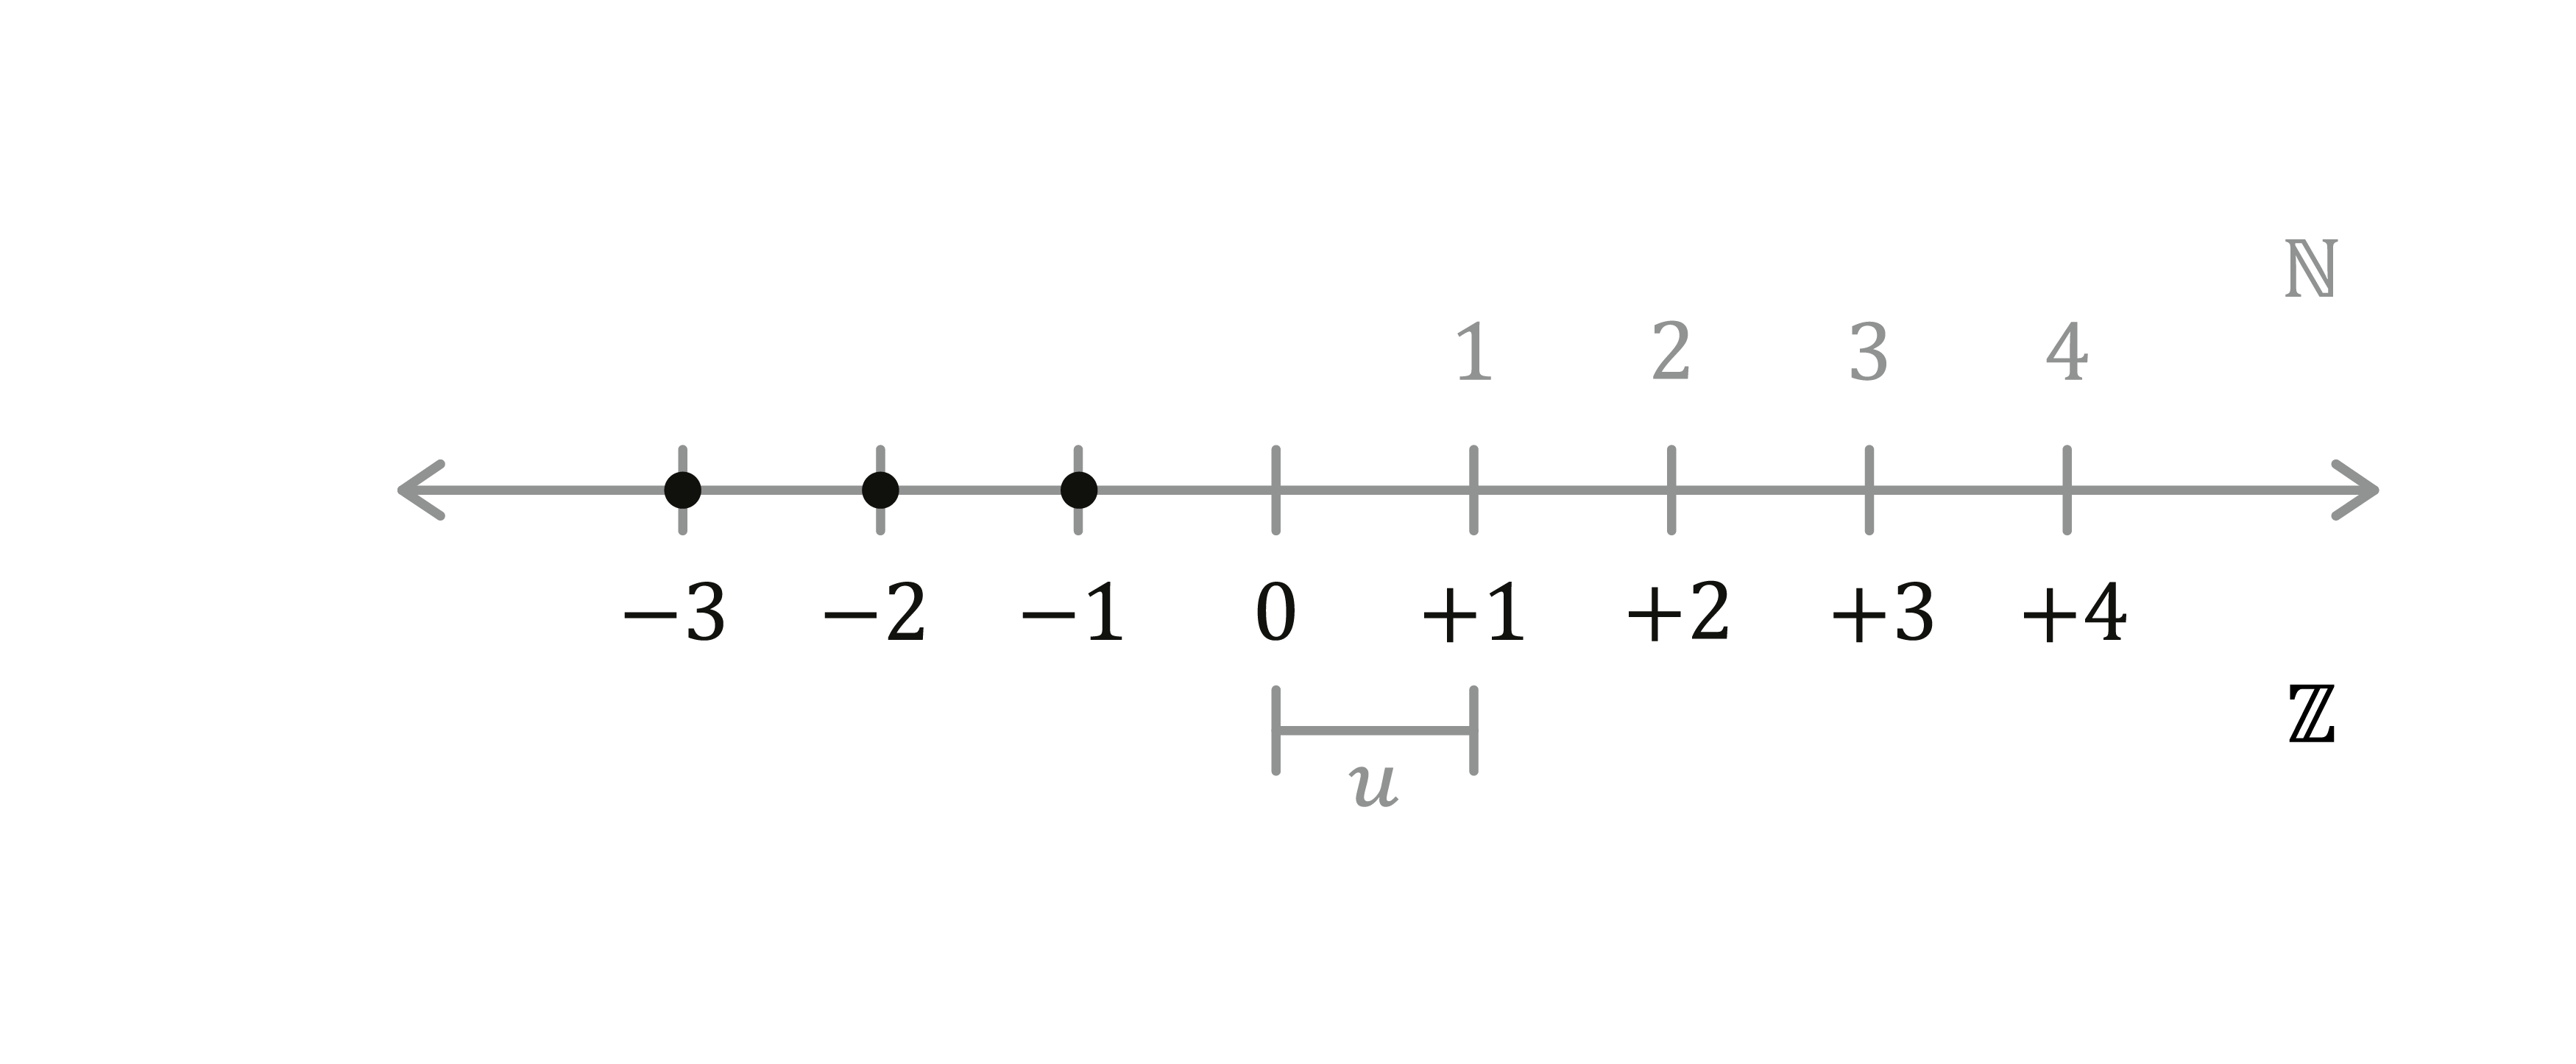 Matematica; Numeri interi e operazioni; 1a media; I numeri interi